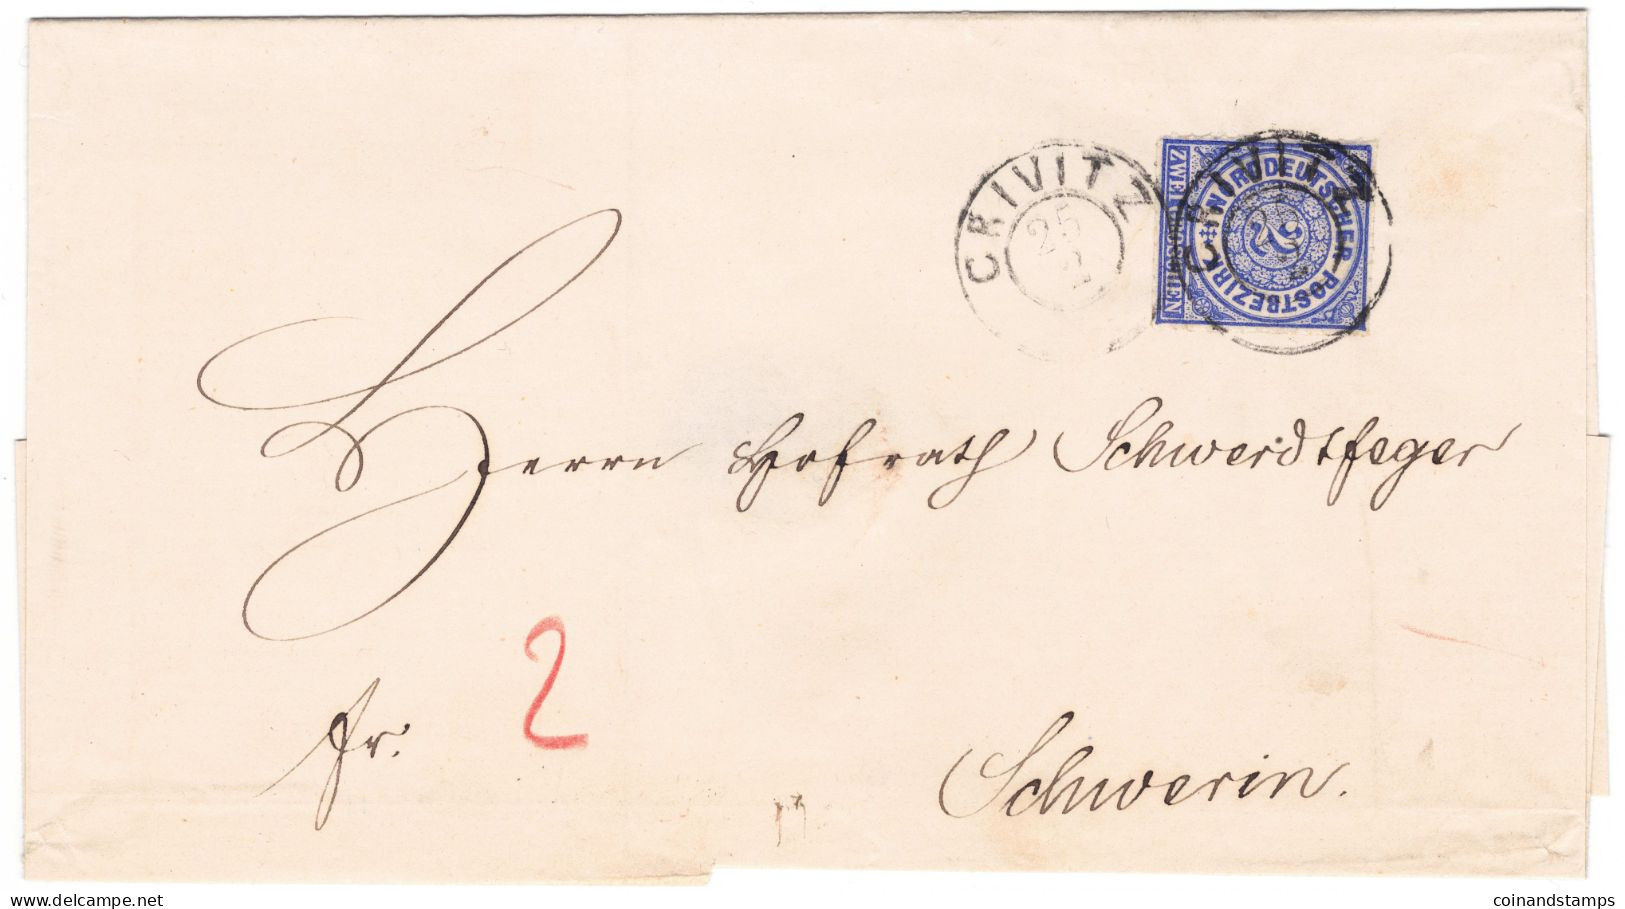 NDP Brief Mit Mi.-Nr.5 Als EF. Crivitz 25.2.1868 An Herrn Schwedtfeger Nach Schwerin, Feinst - Brieven En Documenten